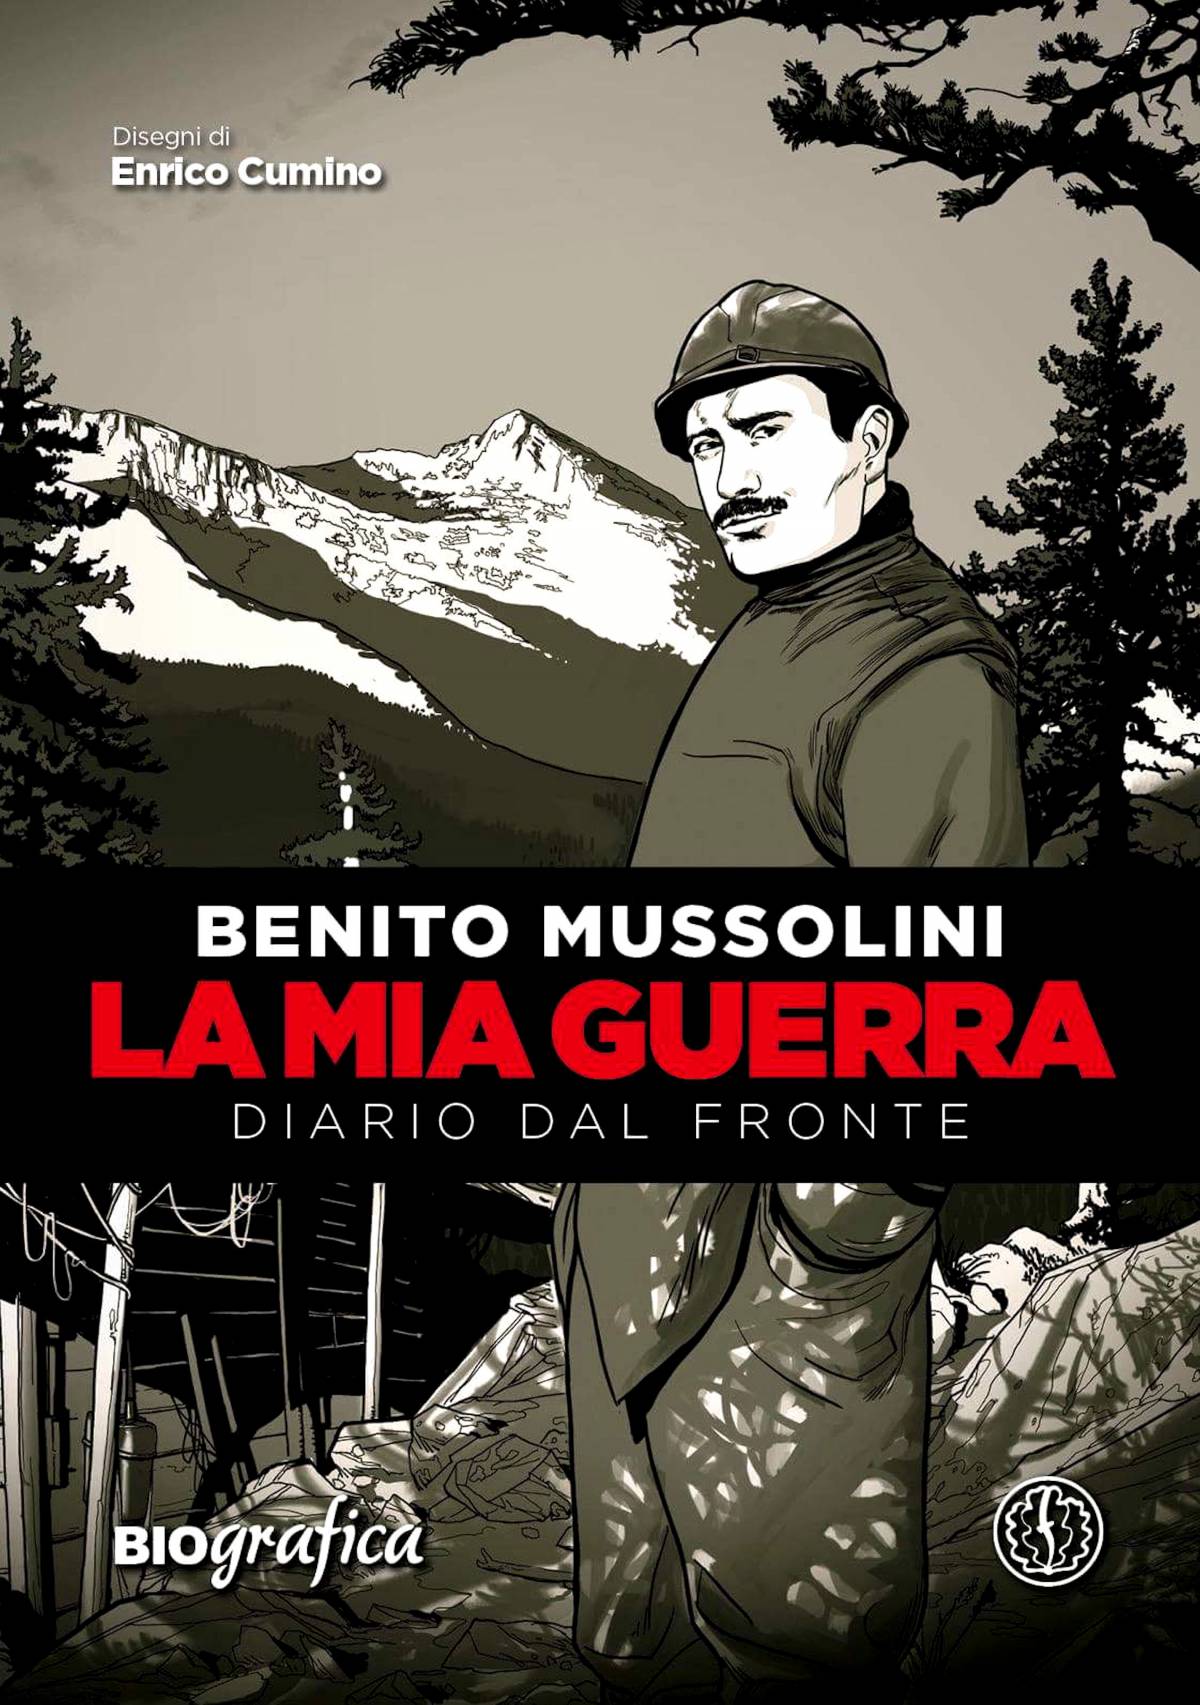 Il diario di Benito Mussolini diventa fumetto 